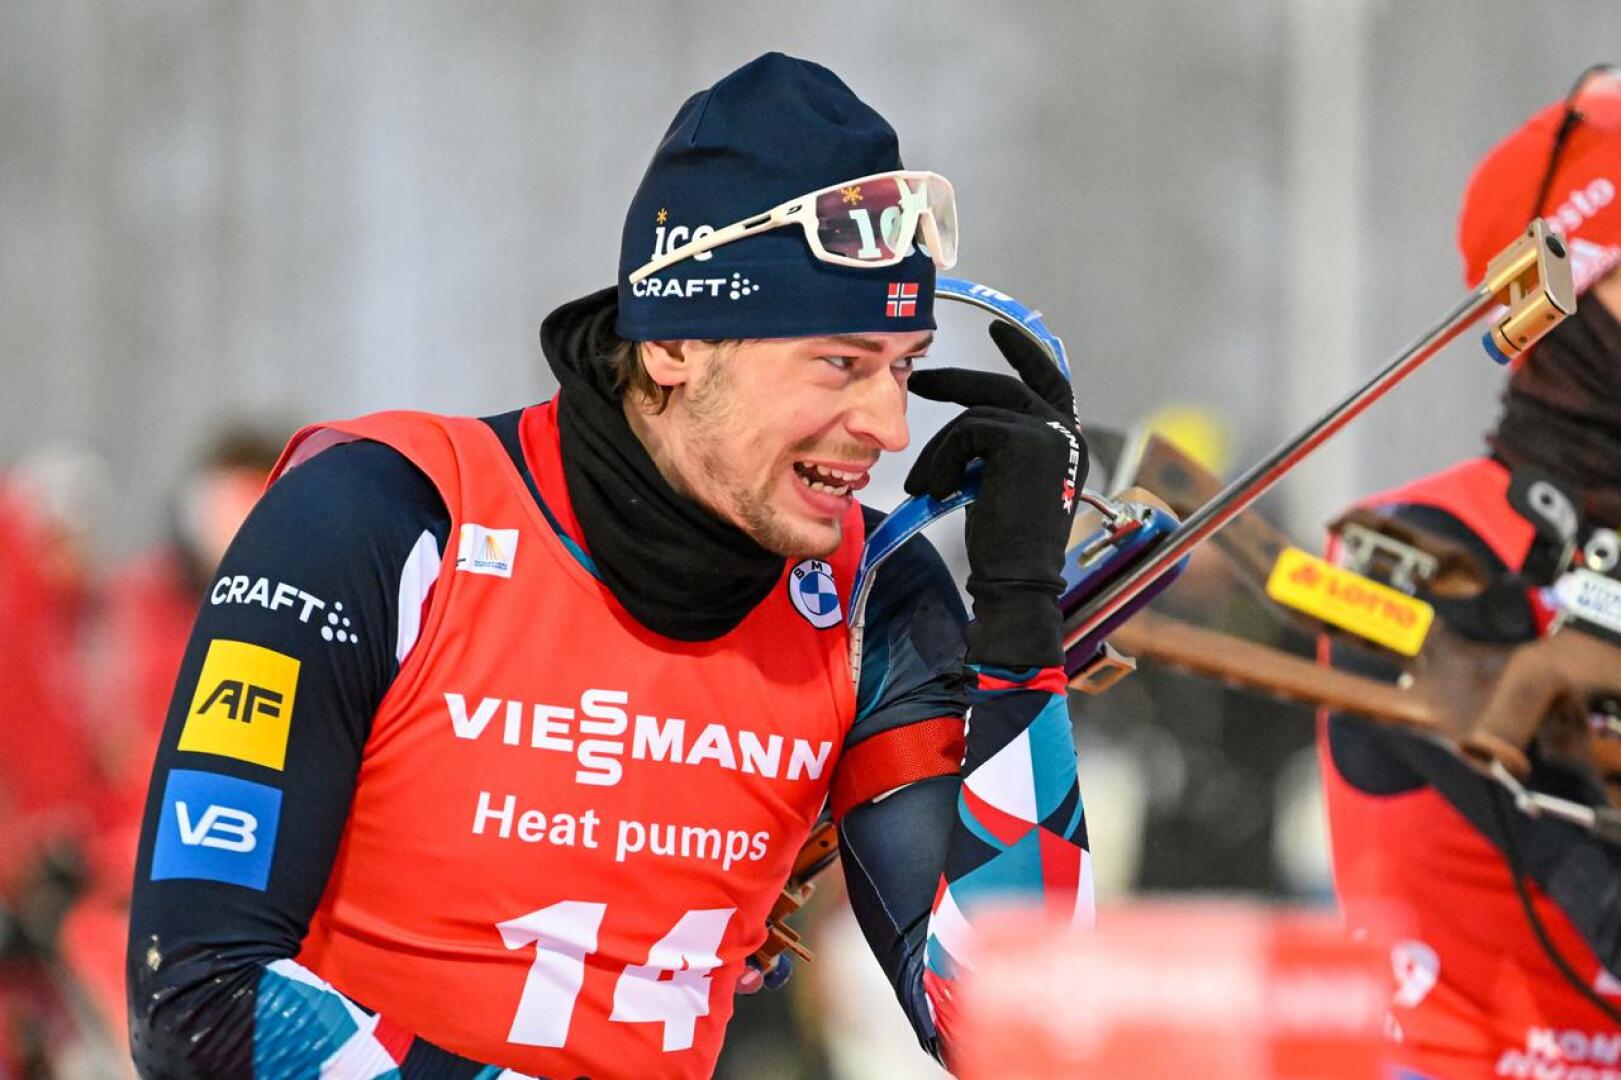 Sturla Holm Lägreid oli yksi Norjan voittajajoukkueen jäsenistä. Kuva tiistain normaalimatkan kilpailusta.